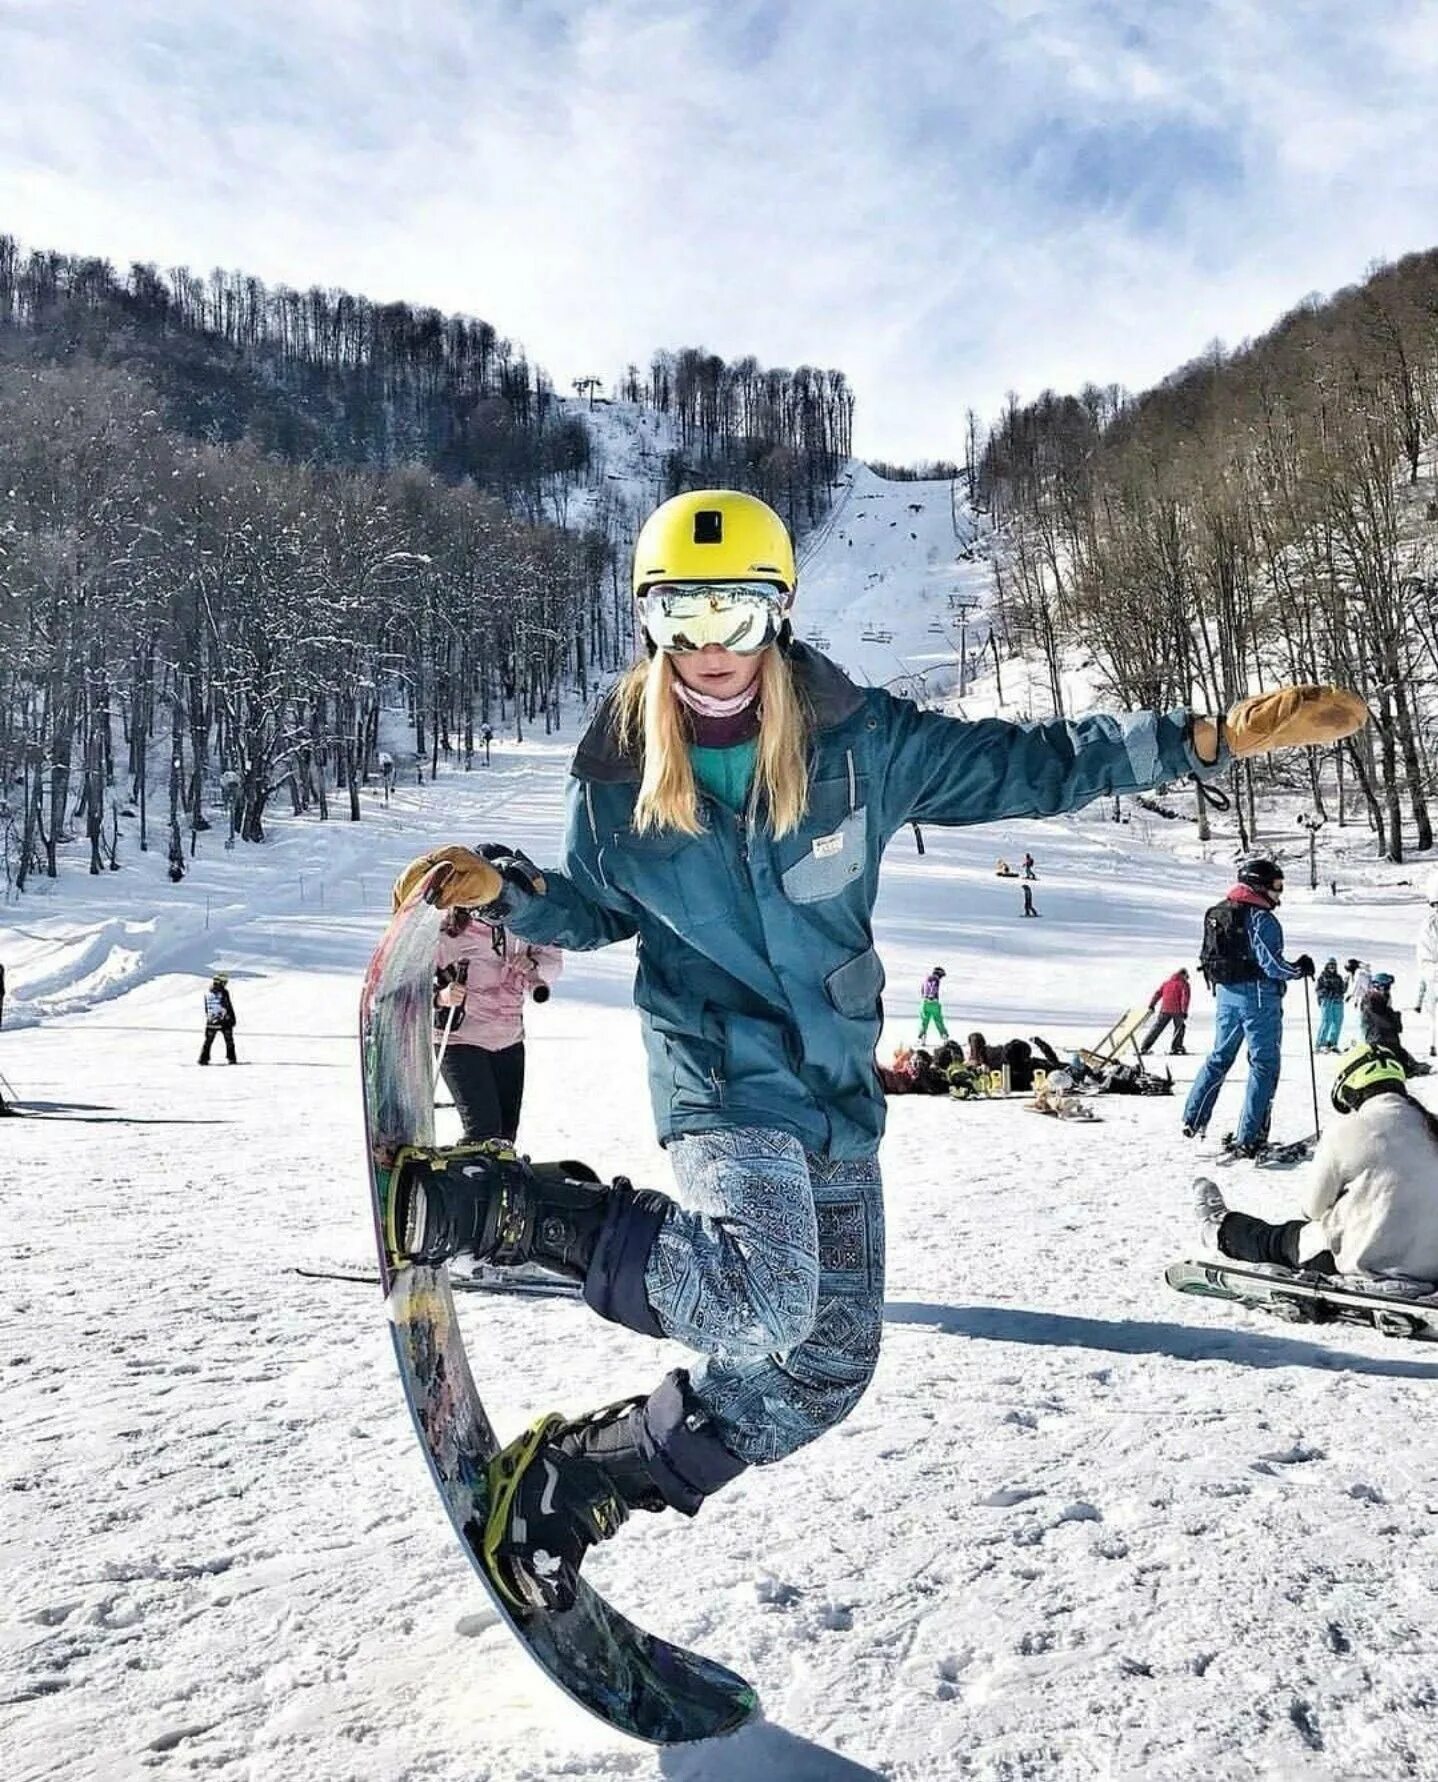 Покататься на горнолыжном курорте. Эбби сноубордистка. Катание на сноуборде. Девушка на сноуборде. Катание на лыжах.